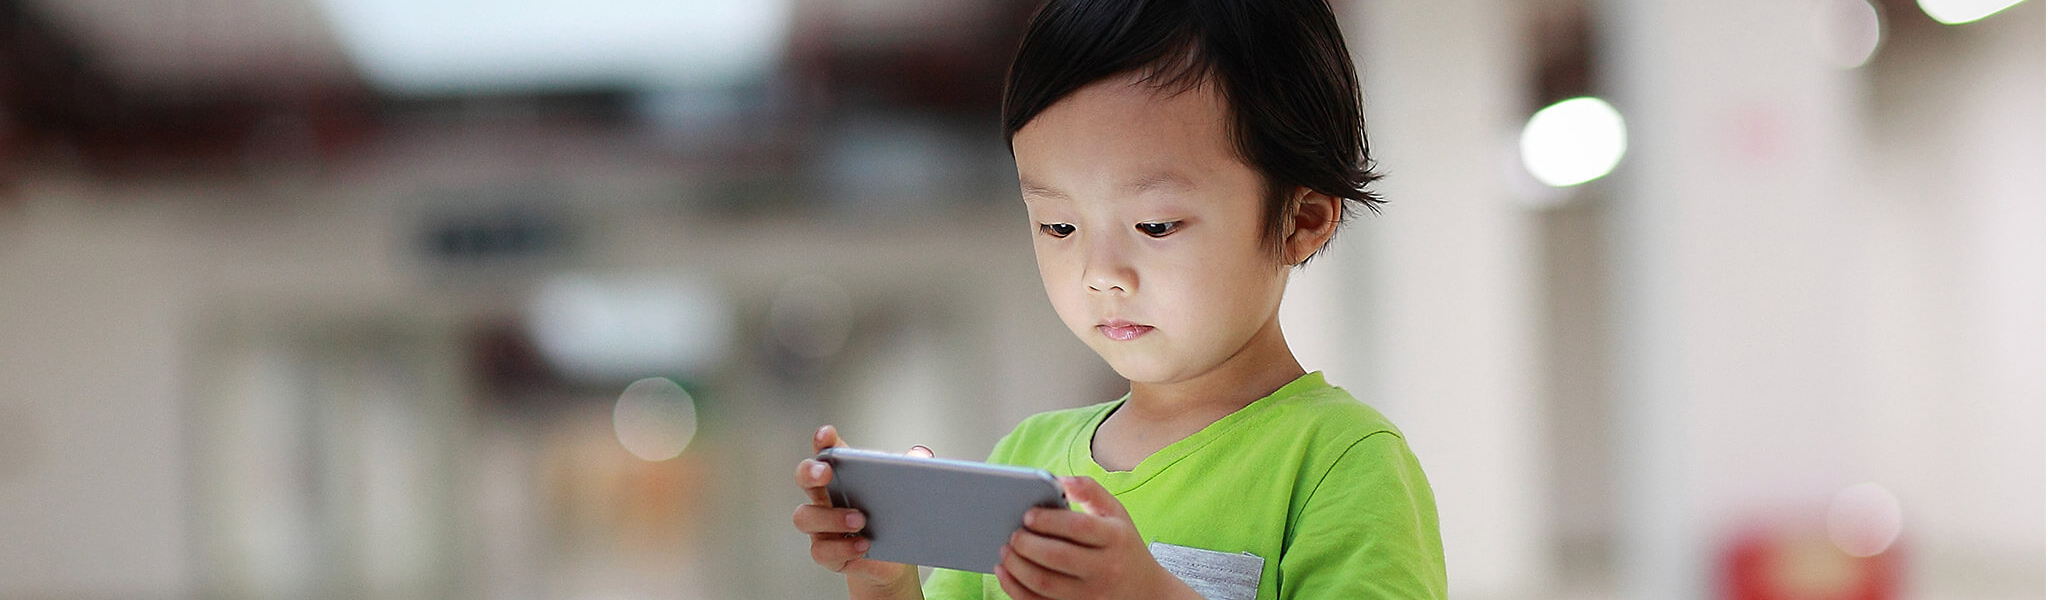 Chinesisches Kind mit Smartphone